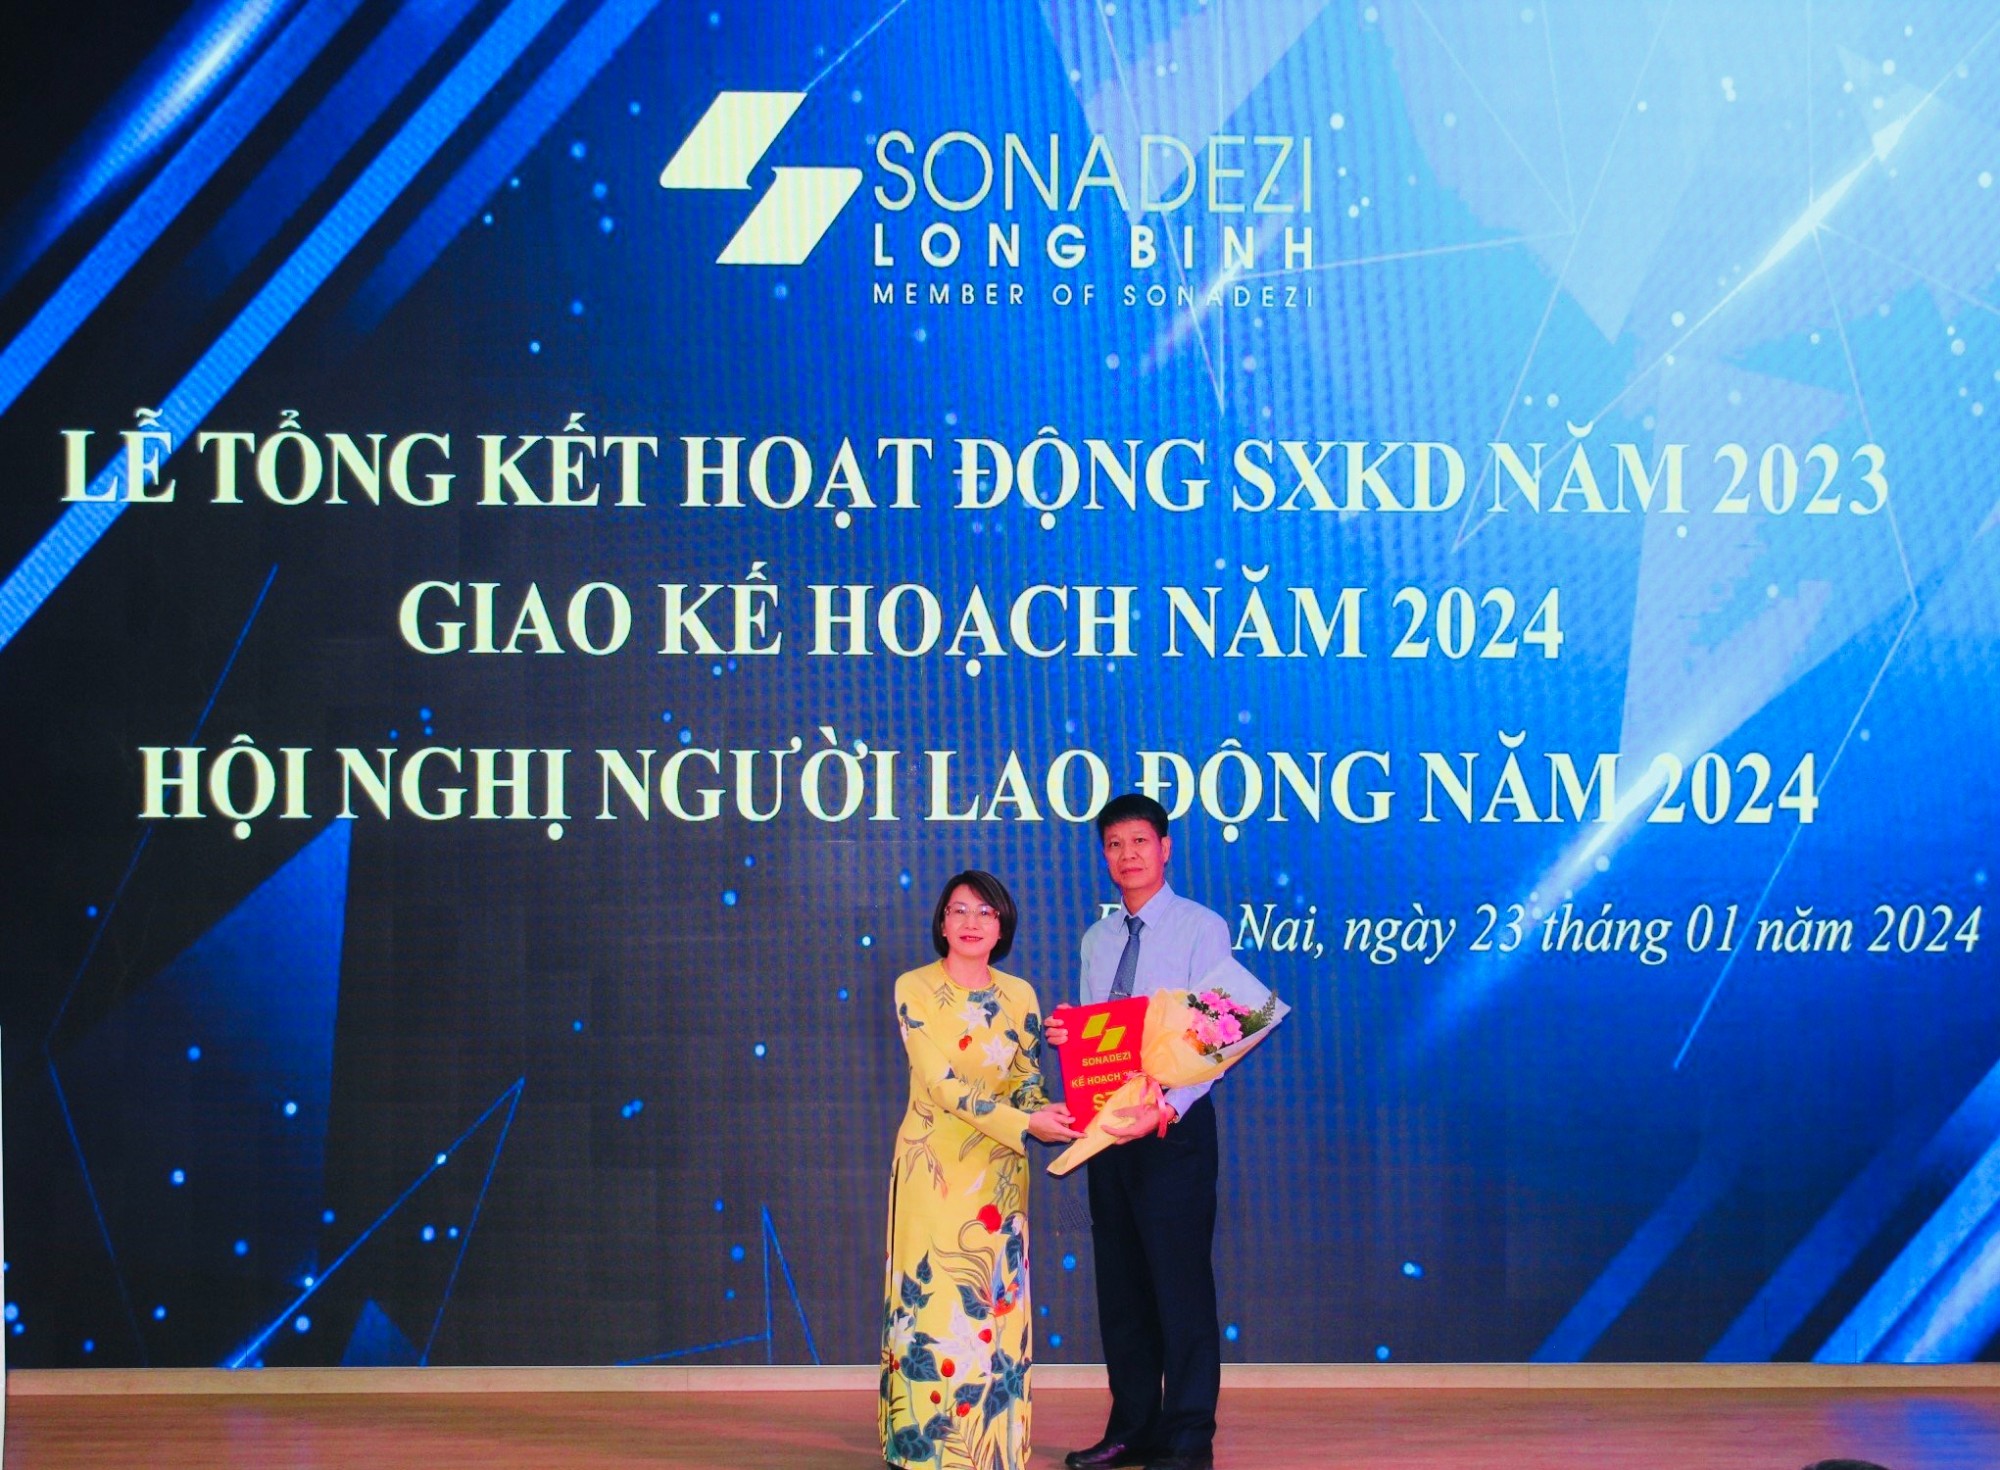 Sonadezi Long Bình đạt kết quả sản xuất kinh doanh tích cực